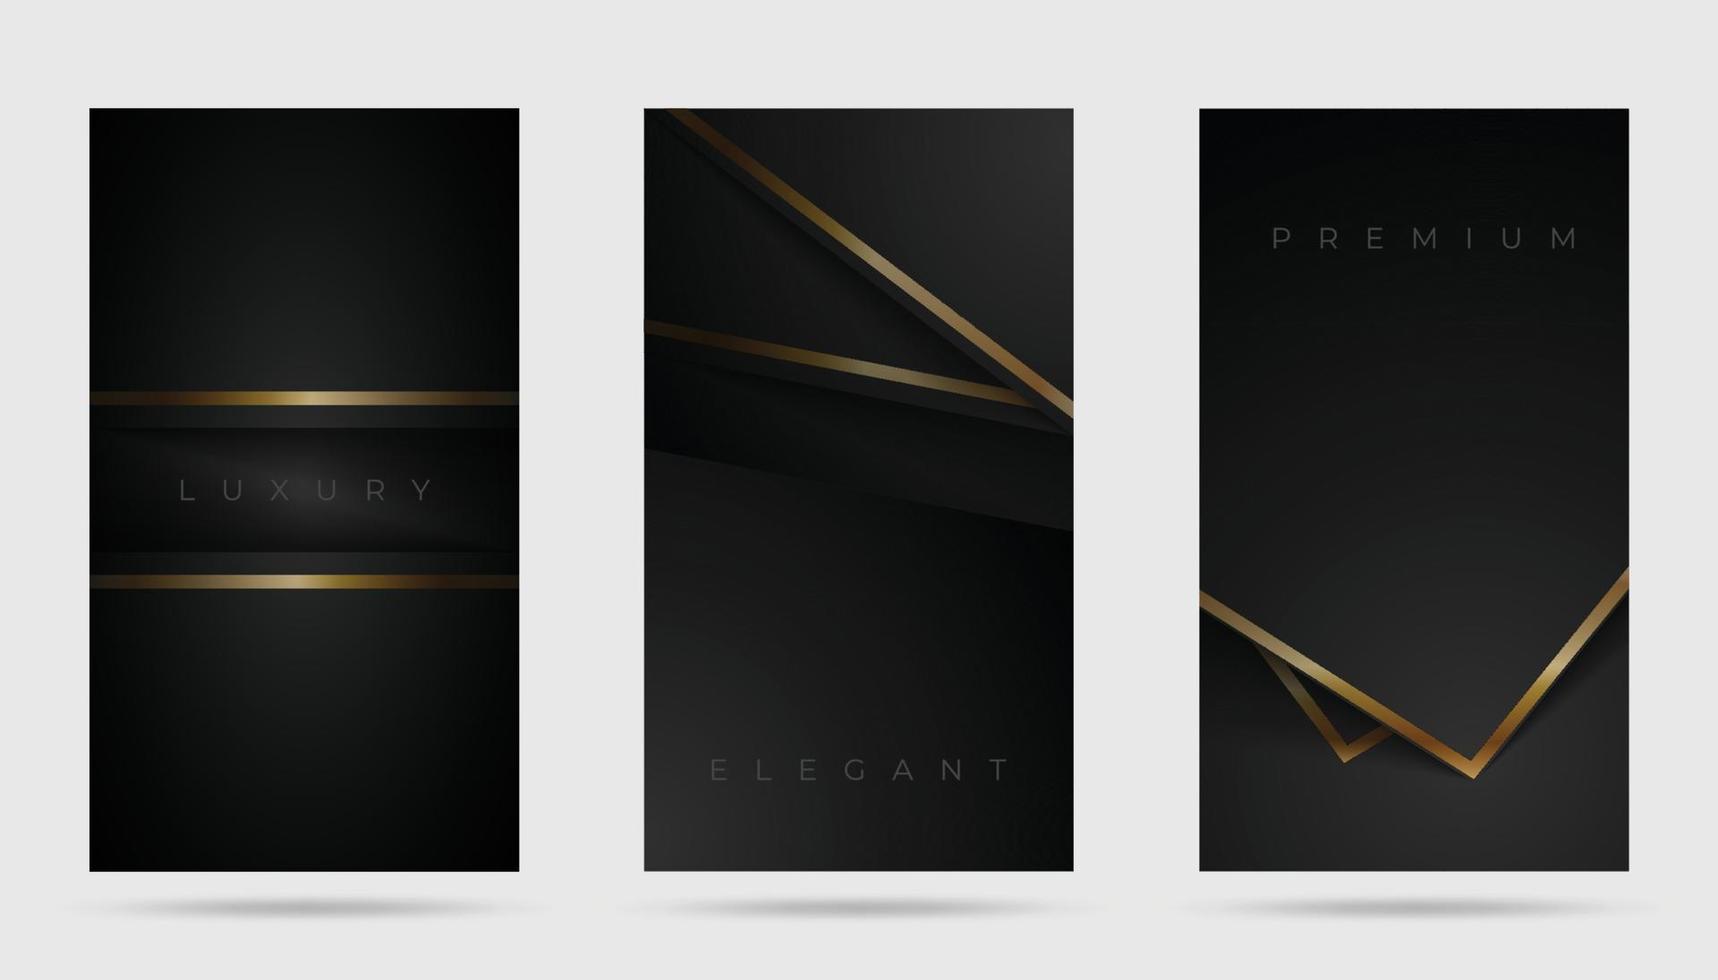 ensemble de couverture de conception noire de qualité supérieure. style de luxe avec des lignes dorées sur un espace noir. couverture élégante, carte, modèle de fond. illustration vectorielle vecteur